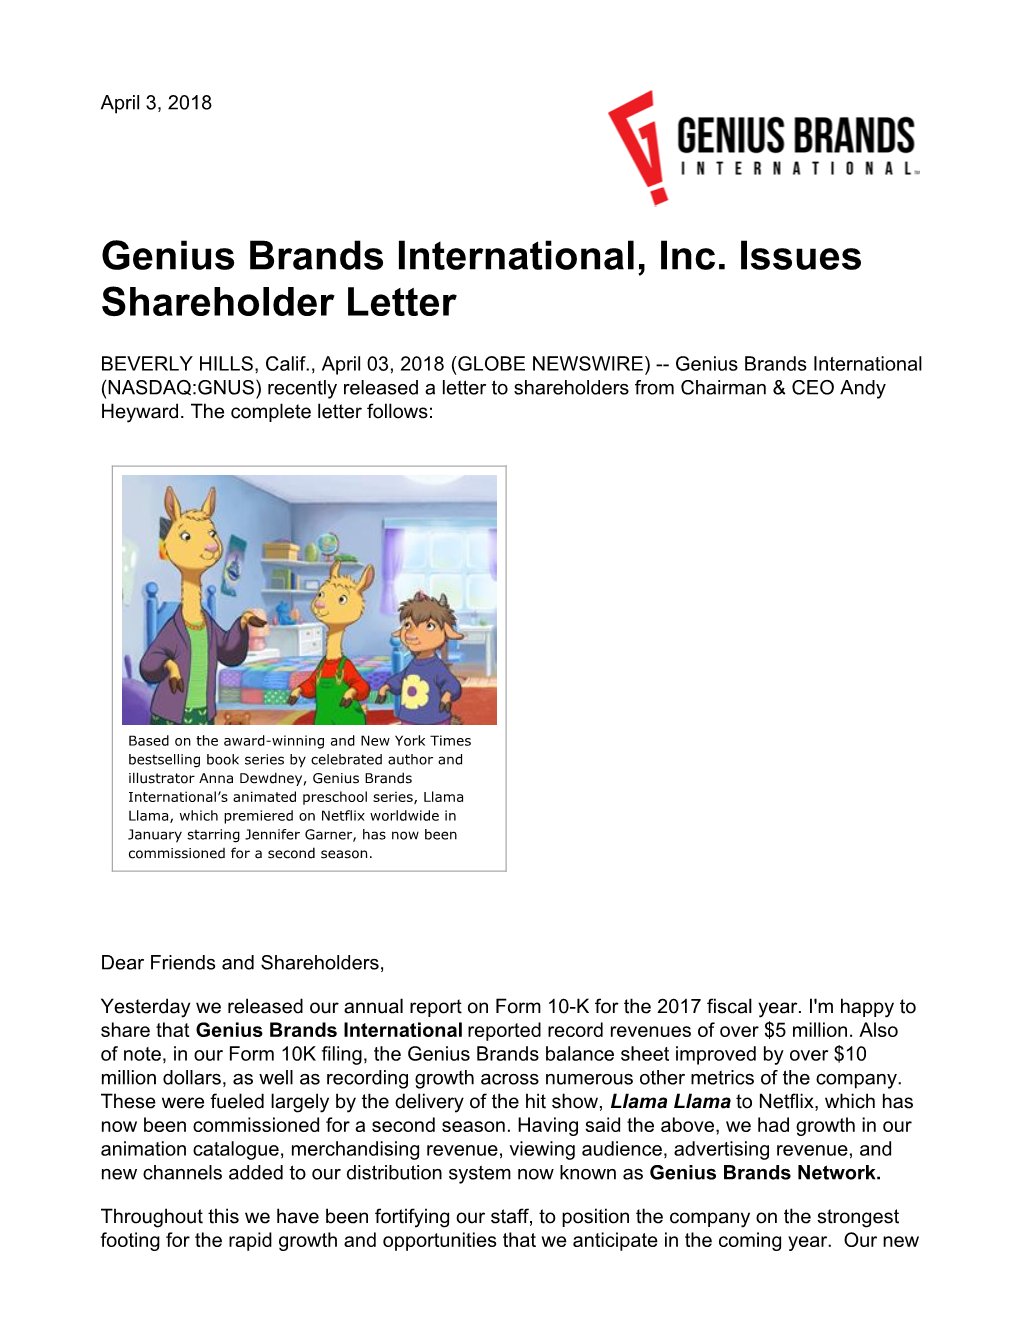 Genius Brands International, Inc. Issues Shareholder Letter